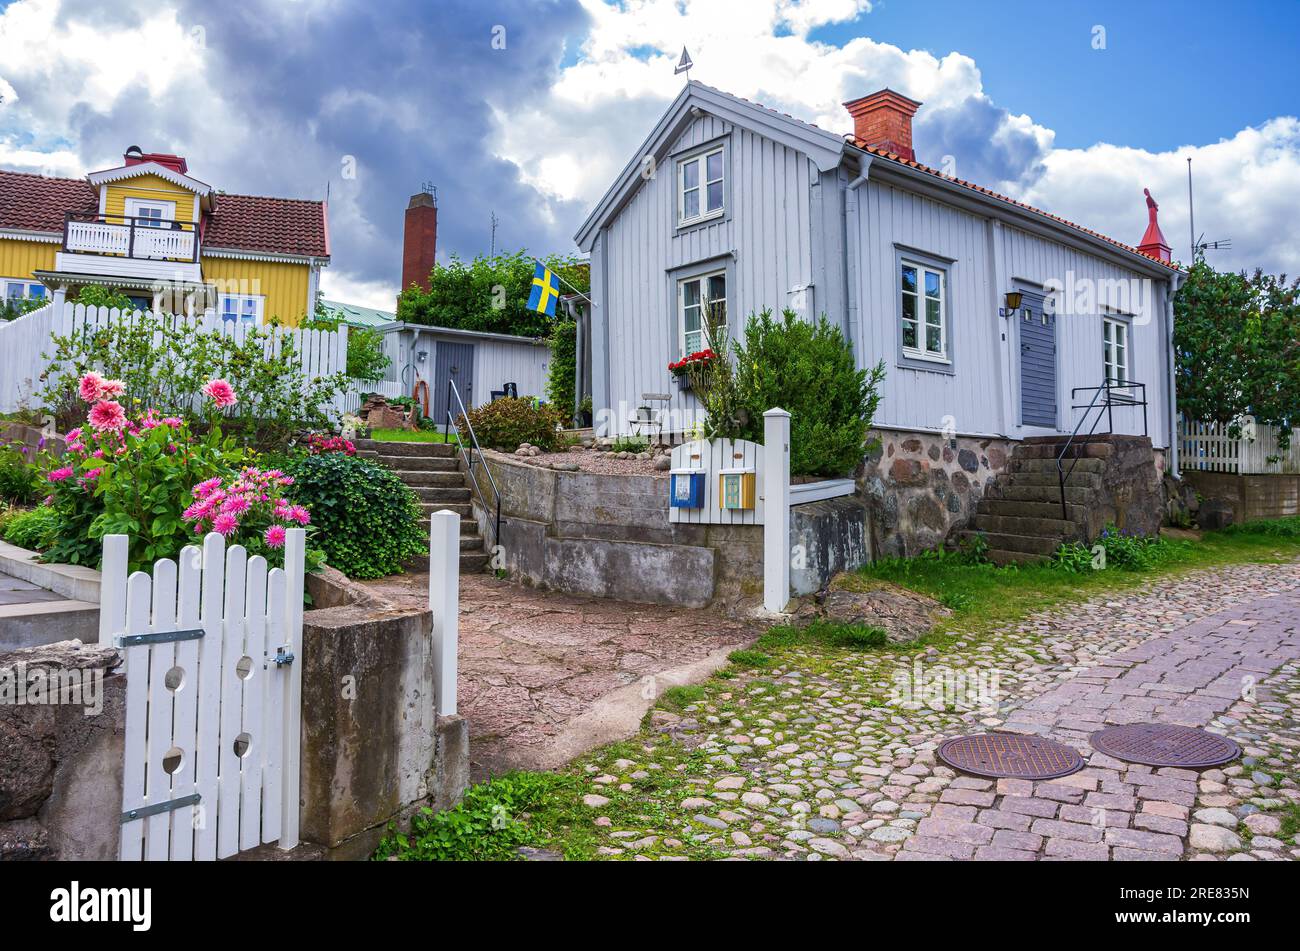 Malerisch gelegene idyllische Hütten im historischen Wohnviertel Besväret och Fnyket von Oskarshamn, Kalmar län, Schweden. Stockfoto